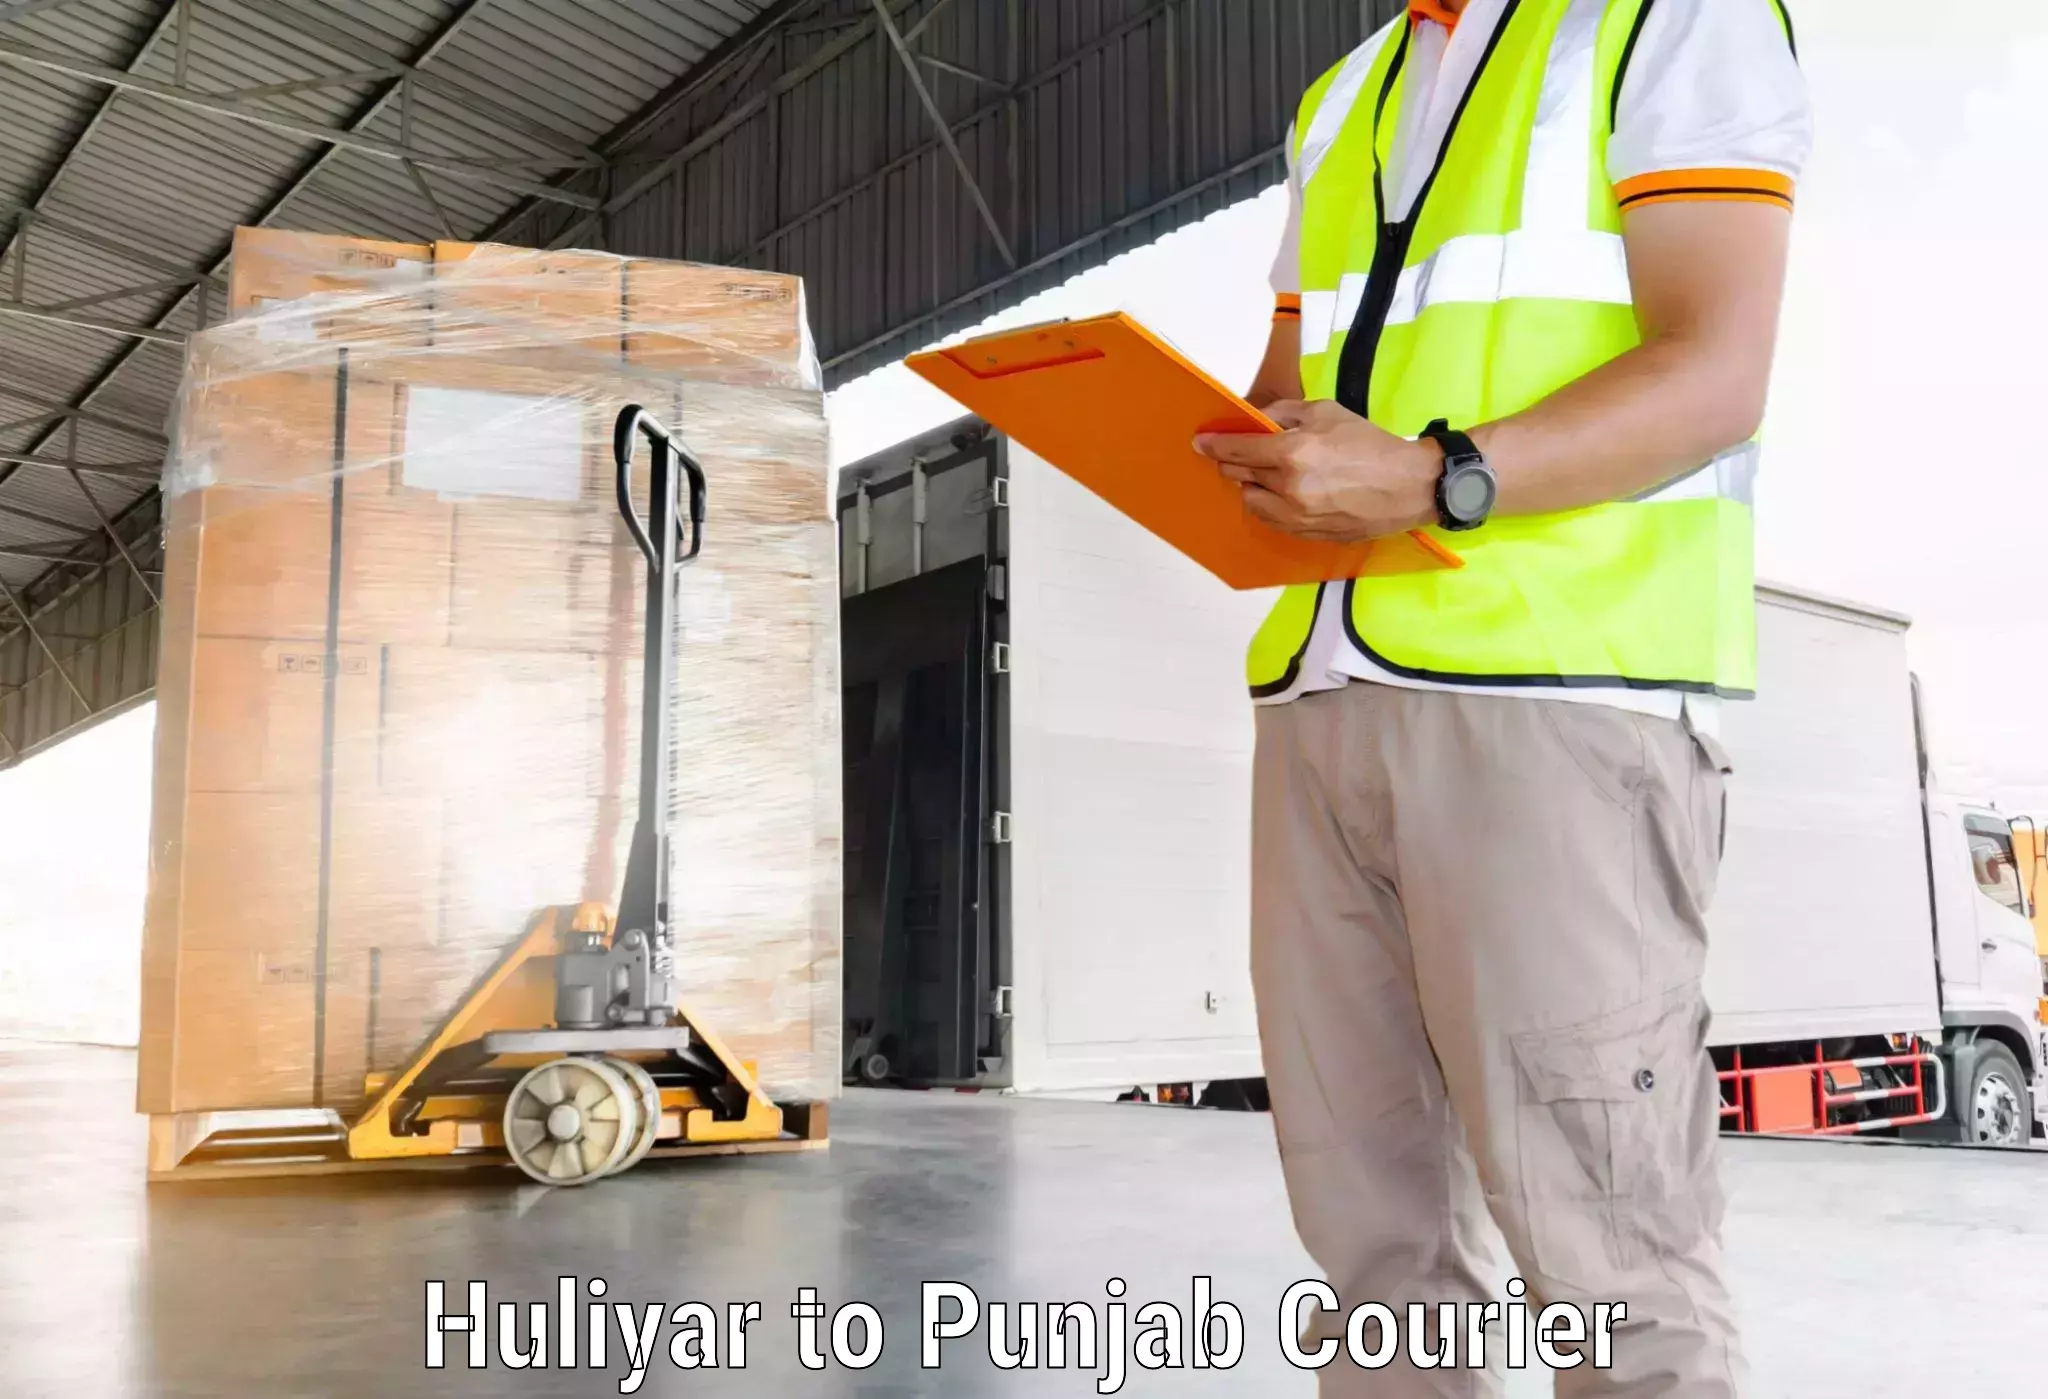 Express courier facilities Huliyar to Bathinda